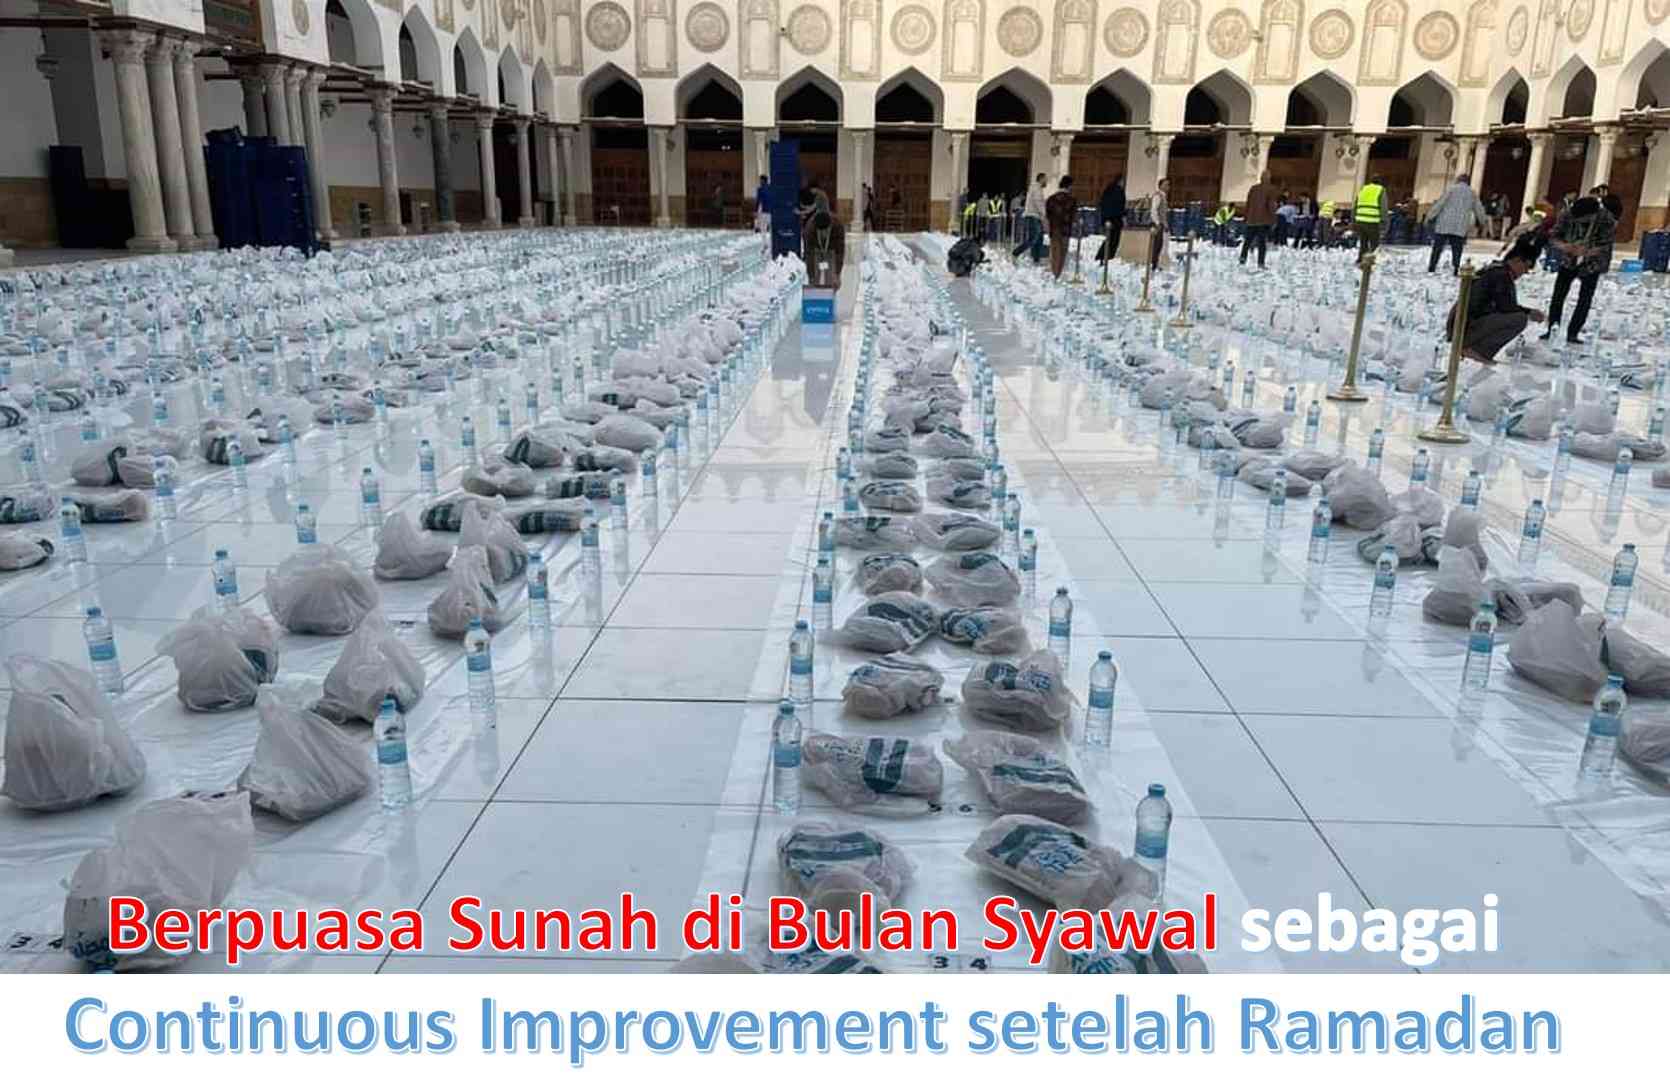 Berpuasa Sunah di Bulan Syawal sebagai Continuous Improvement setelah Ramadan